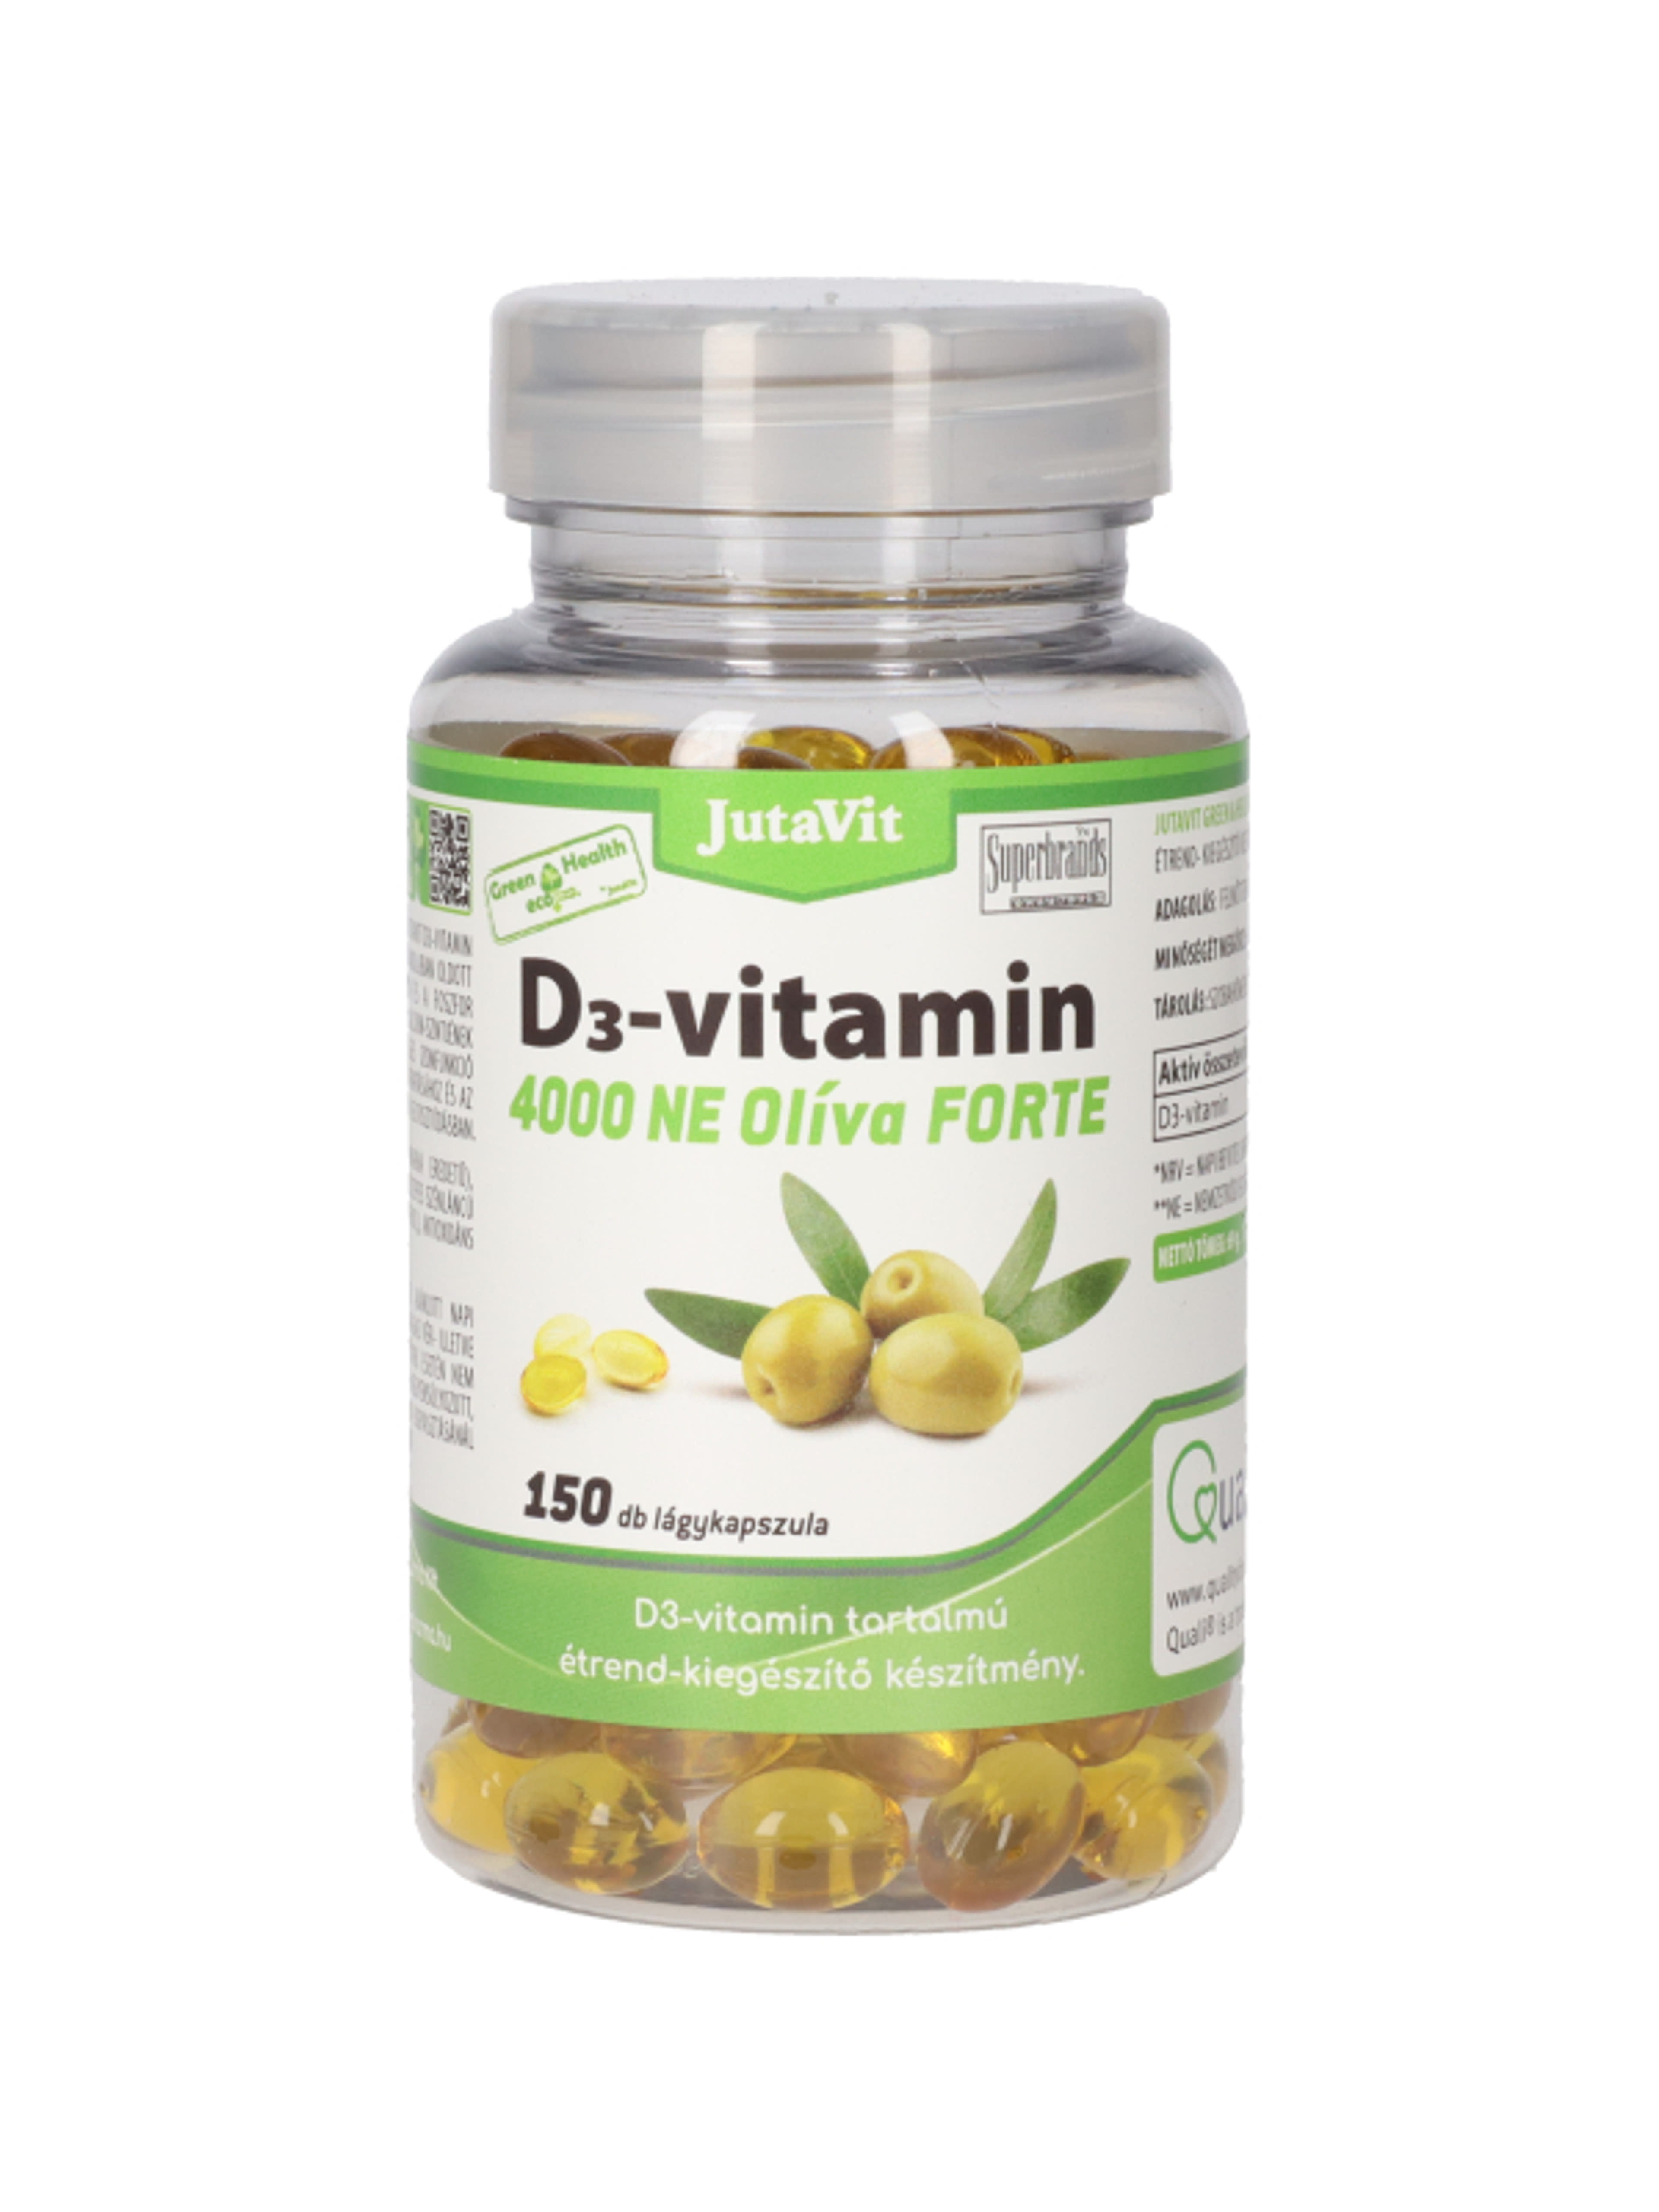 Jutavit Green & Health D3-vitamin 4000 NE Olíva Forte étrend-kiegészítő lágykapszula - 150 db-1